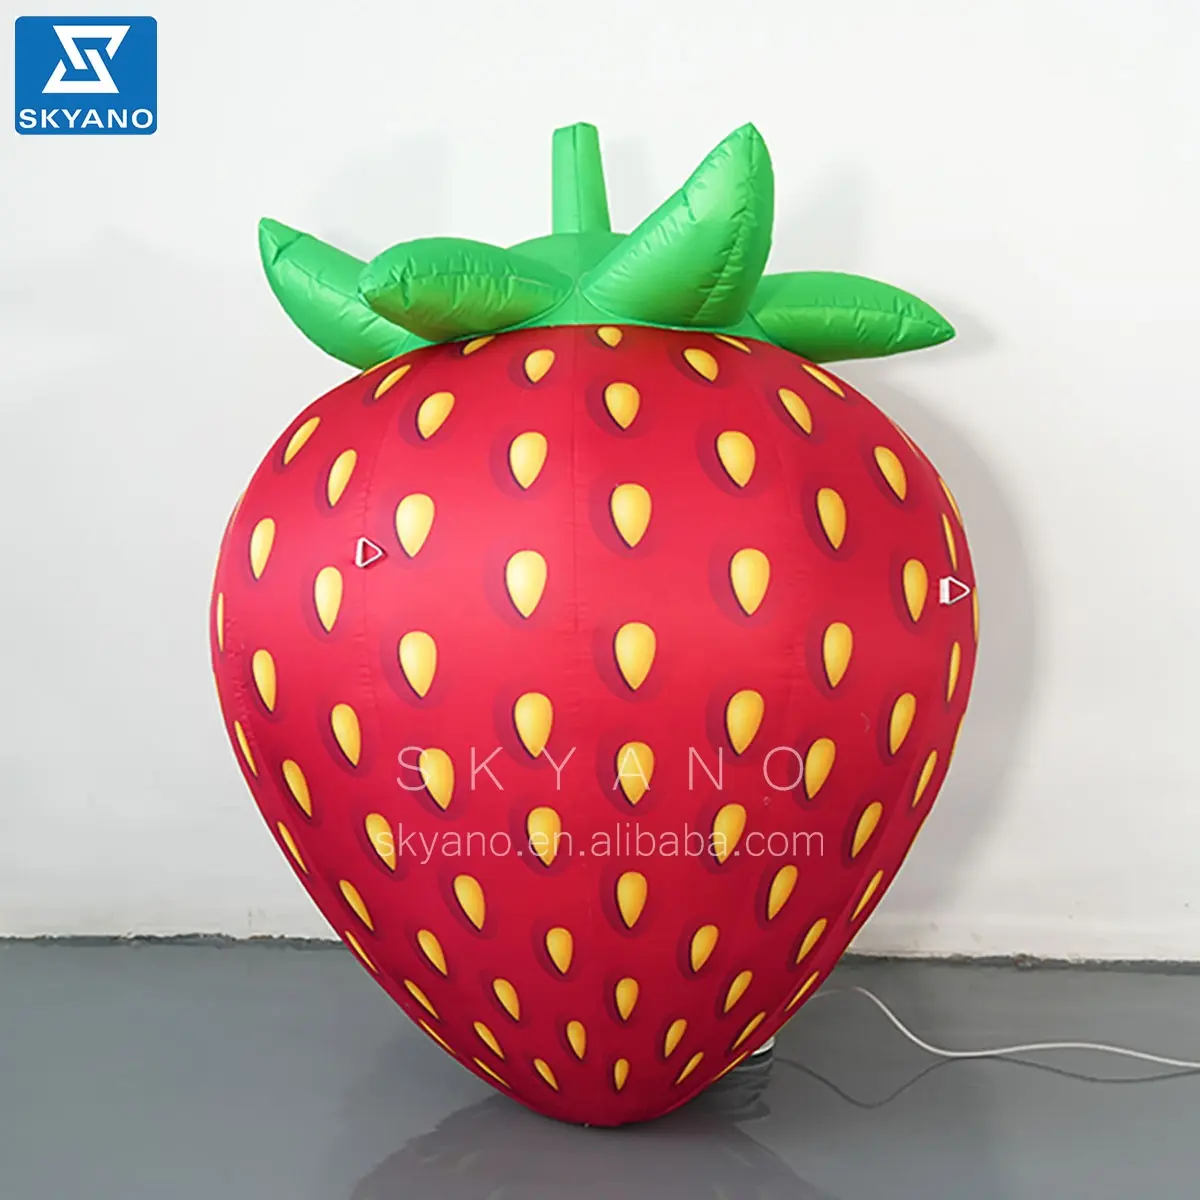 Надувная клубника рекламная модель гигантская Клубника со светодиодными огнями имитация фруктов для продажи